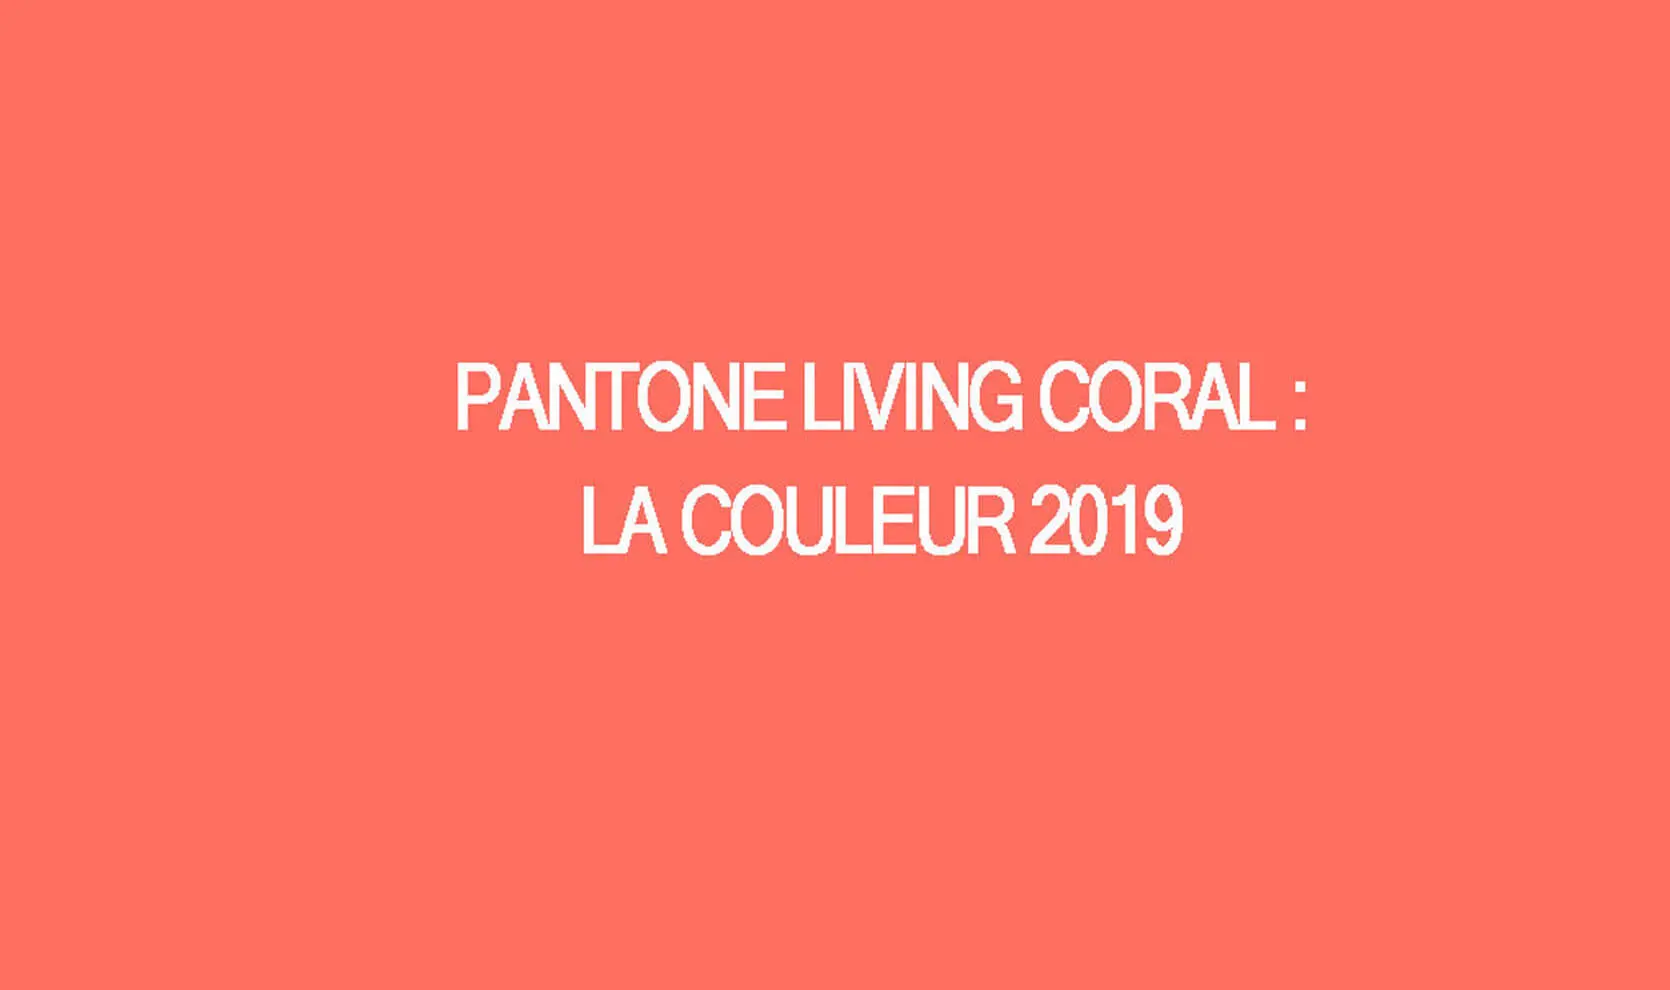 La couleur de l'année 2019 est le corail vivant